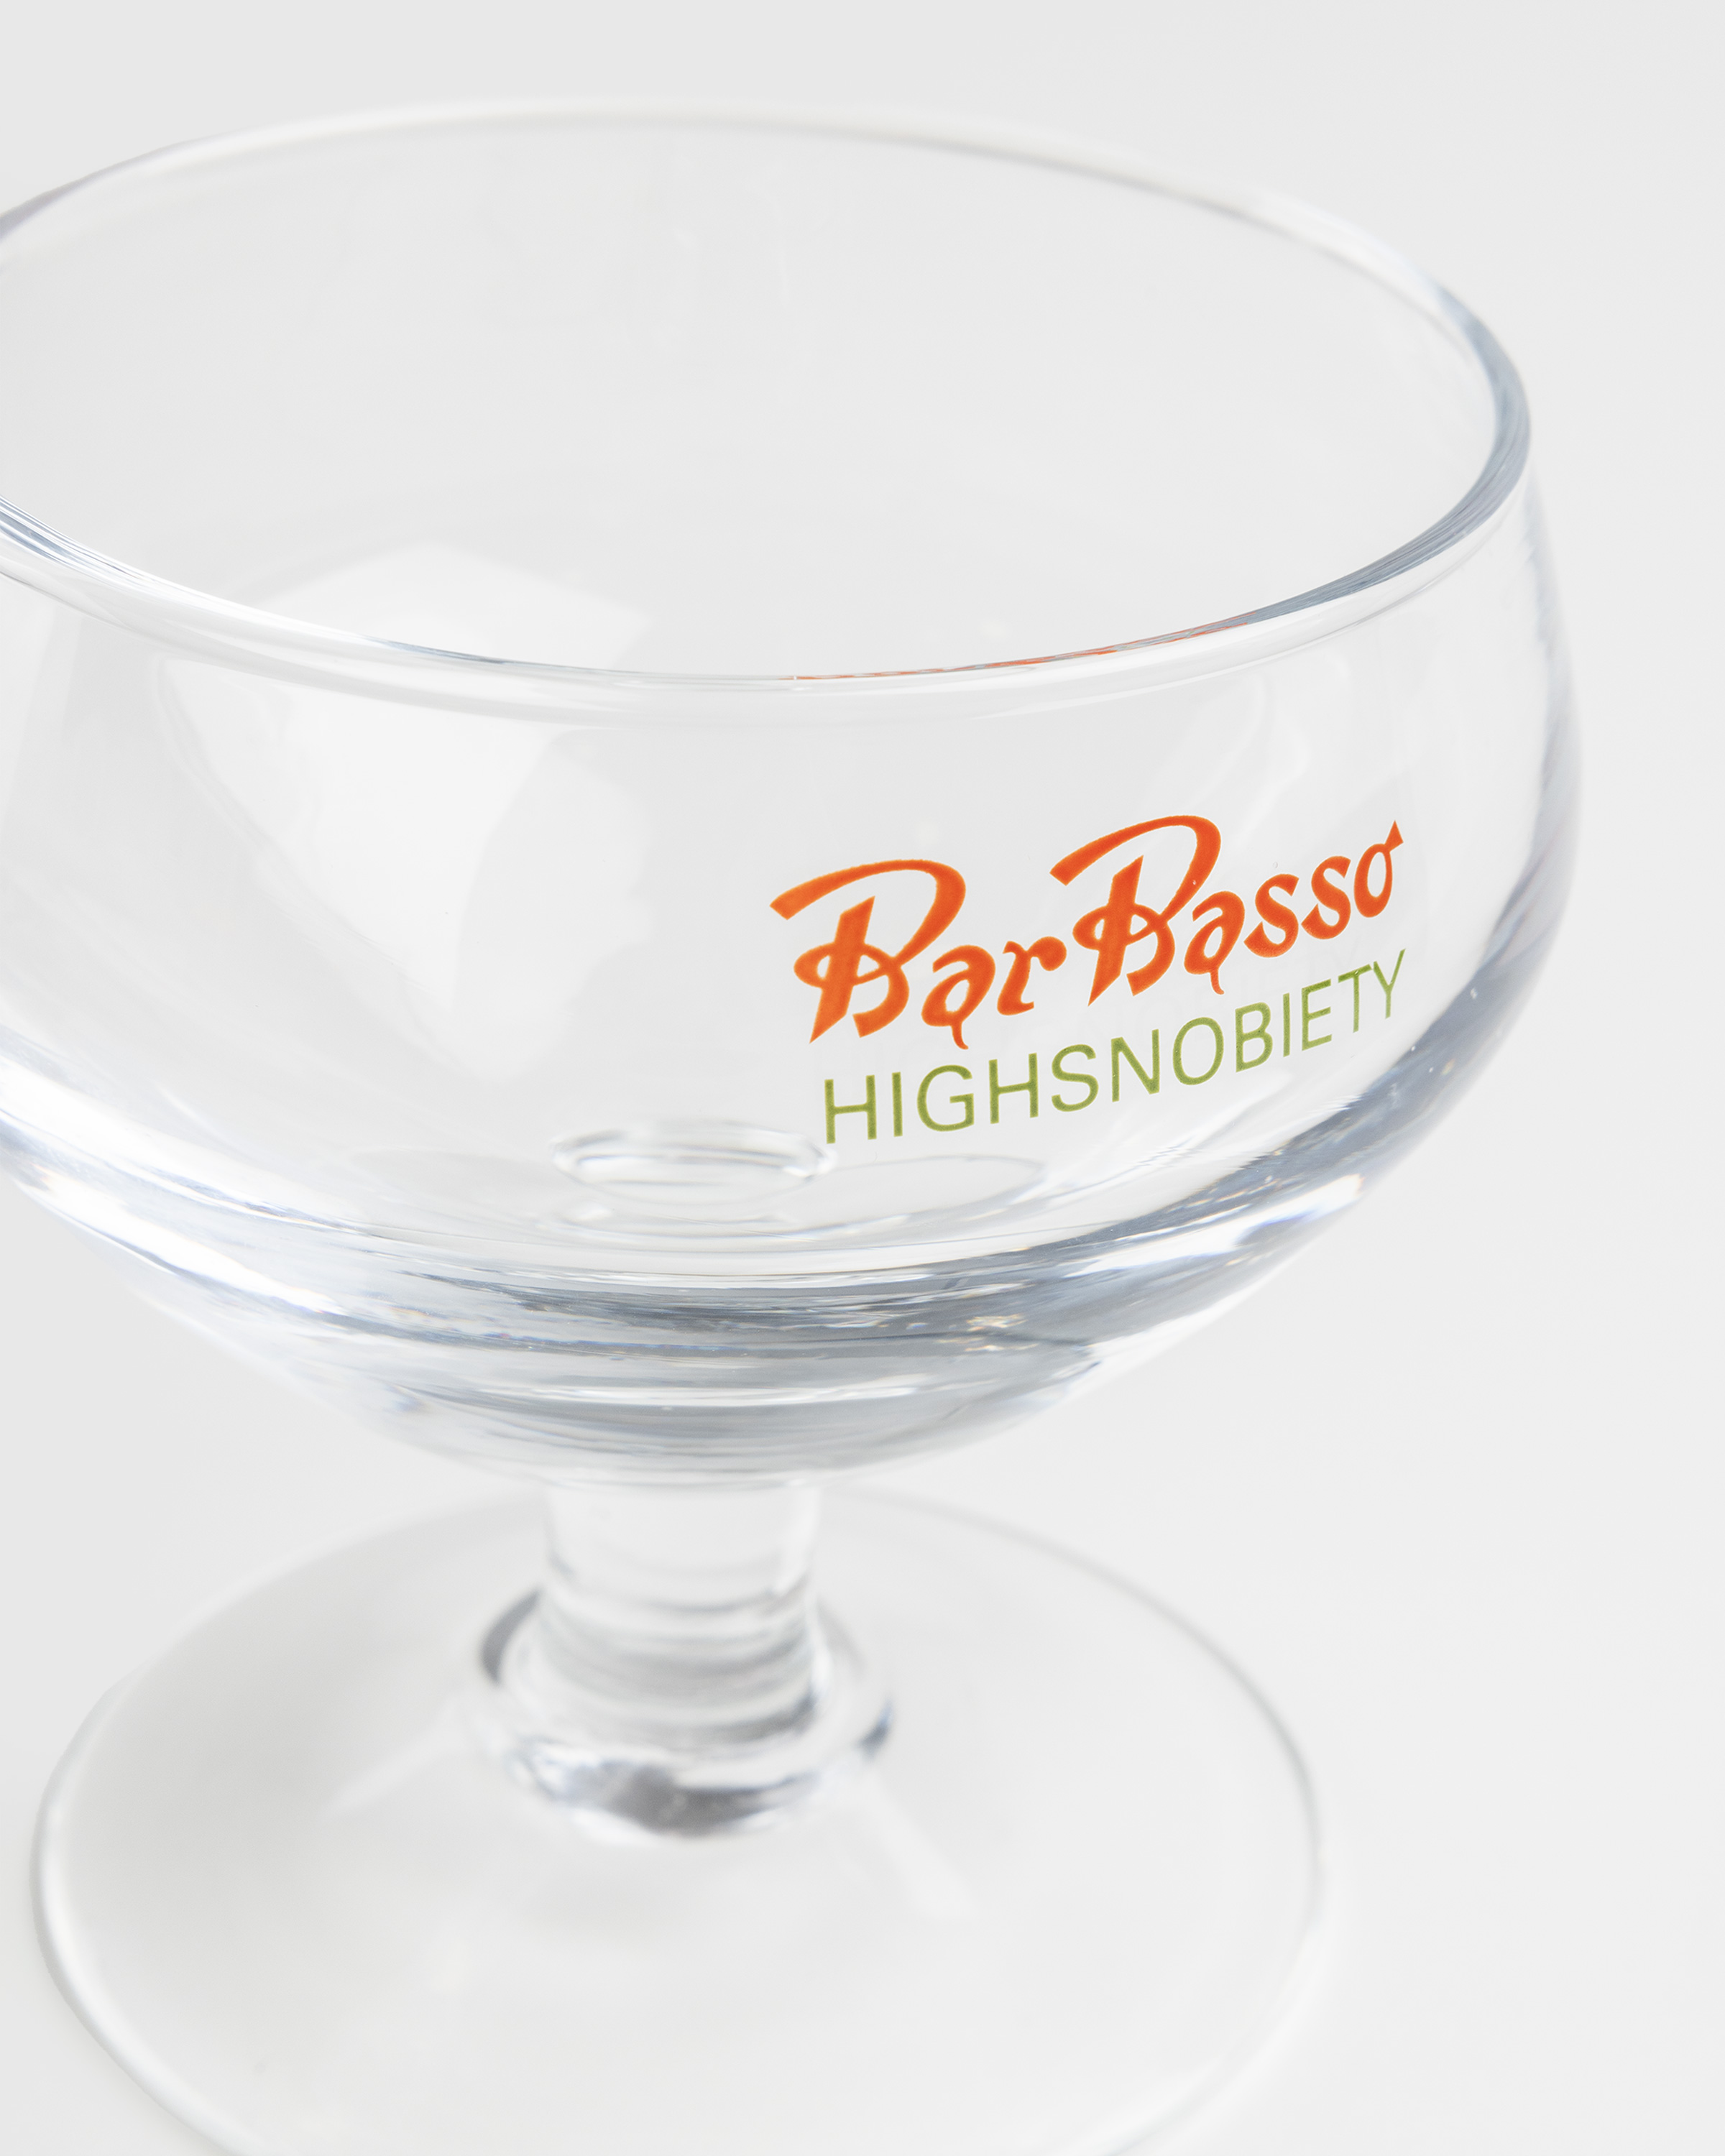 Highsnobiety x Bar Basso – Low Sbagliato Glass  - Glassware & Barware - Transparent - Image 2